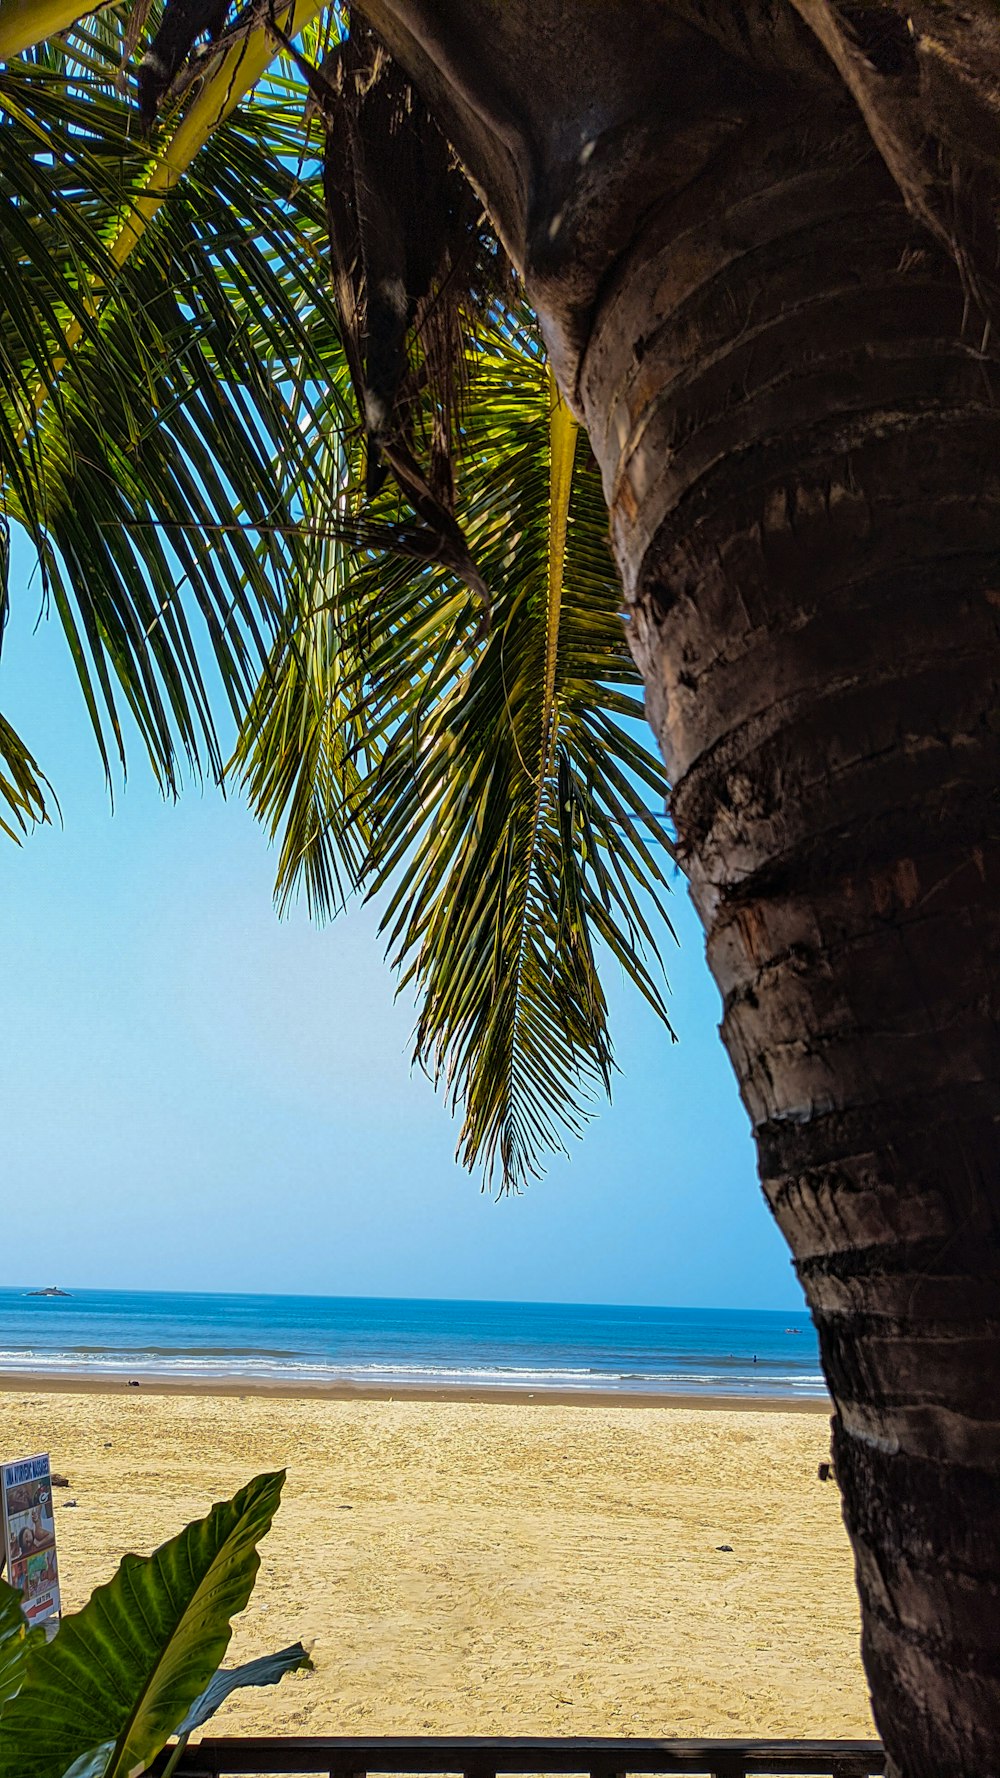 a view of a beach through a palm tree